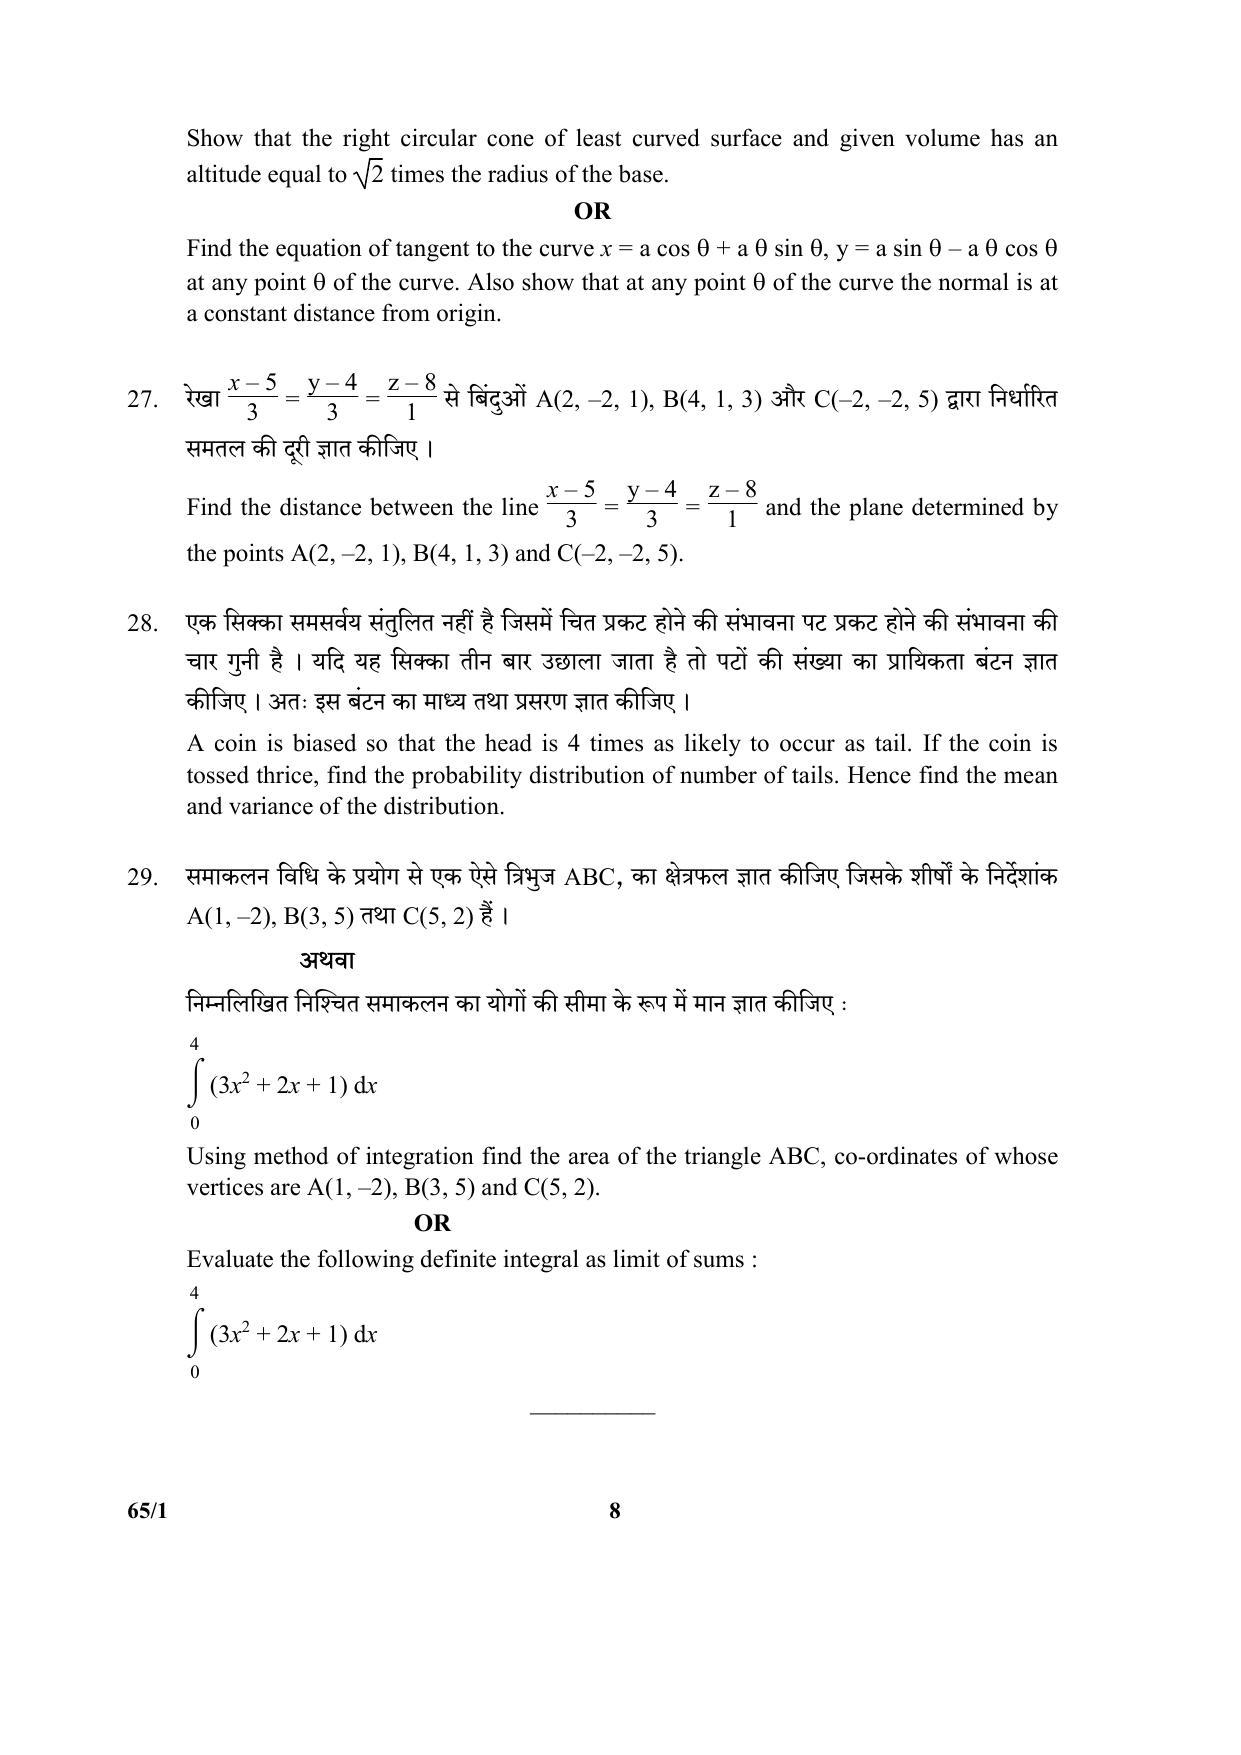 CBSE Class 12 65-1 (Mathematics) 2017-comptt Question Paper - Page 8